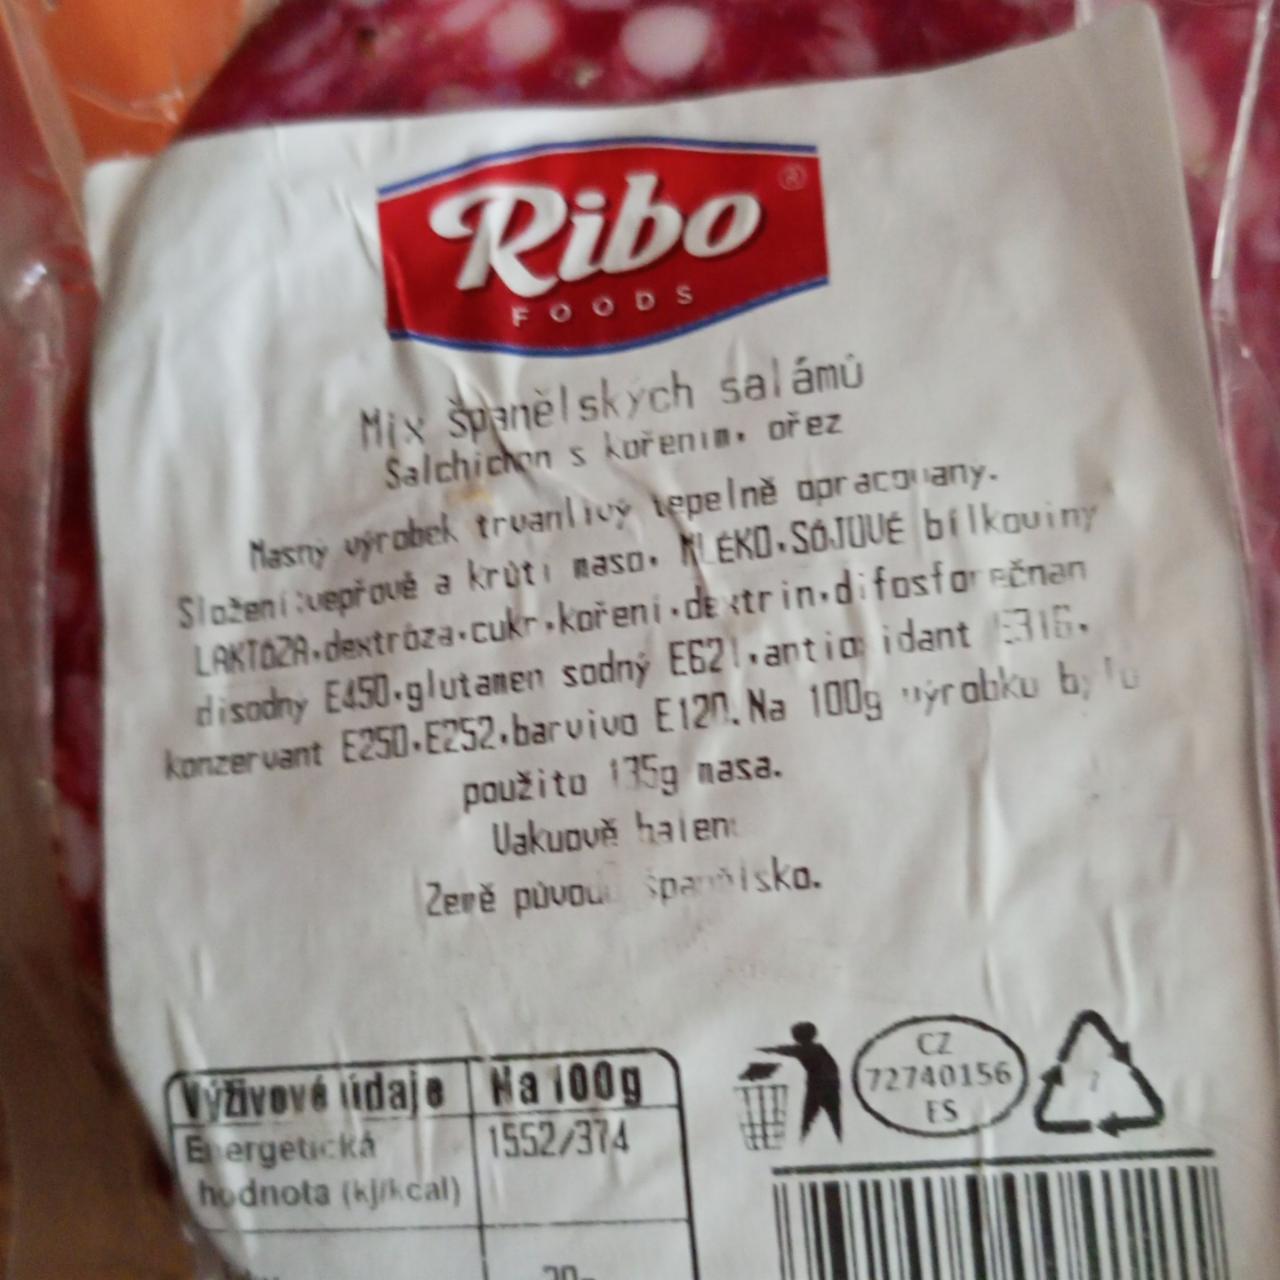 Fotografie - Mix španělských salámů Ribo foods